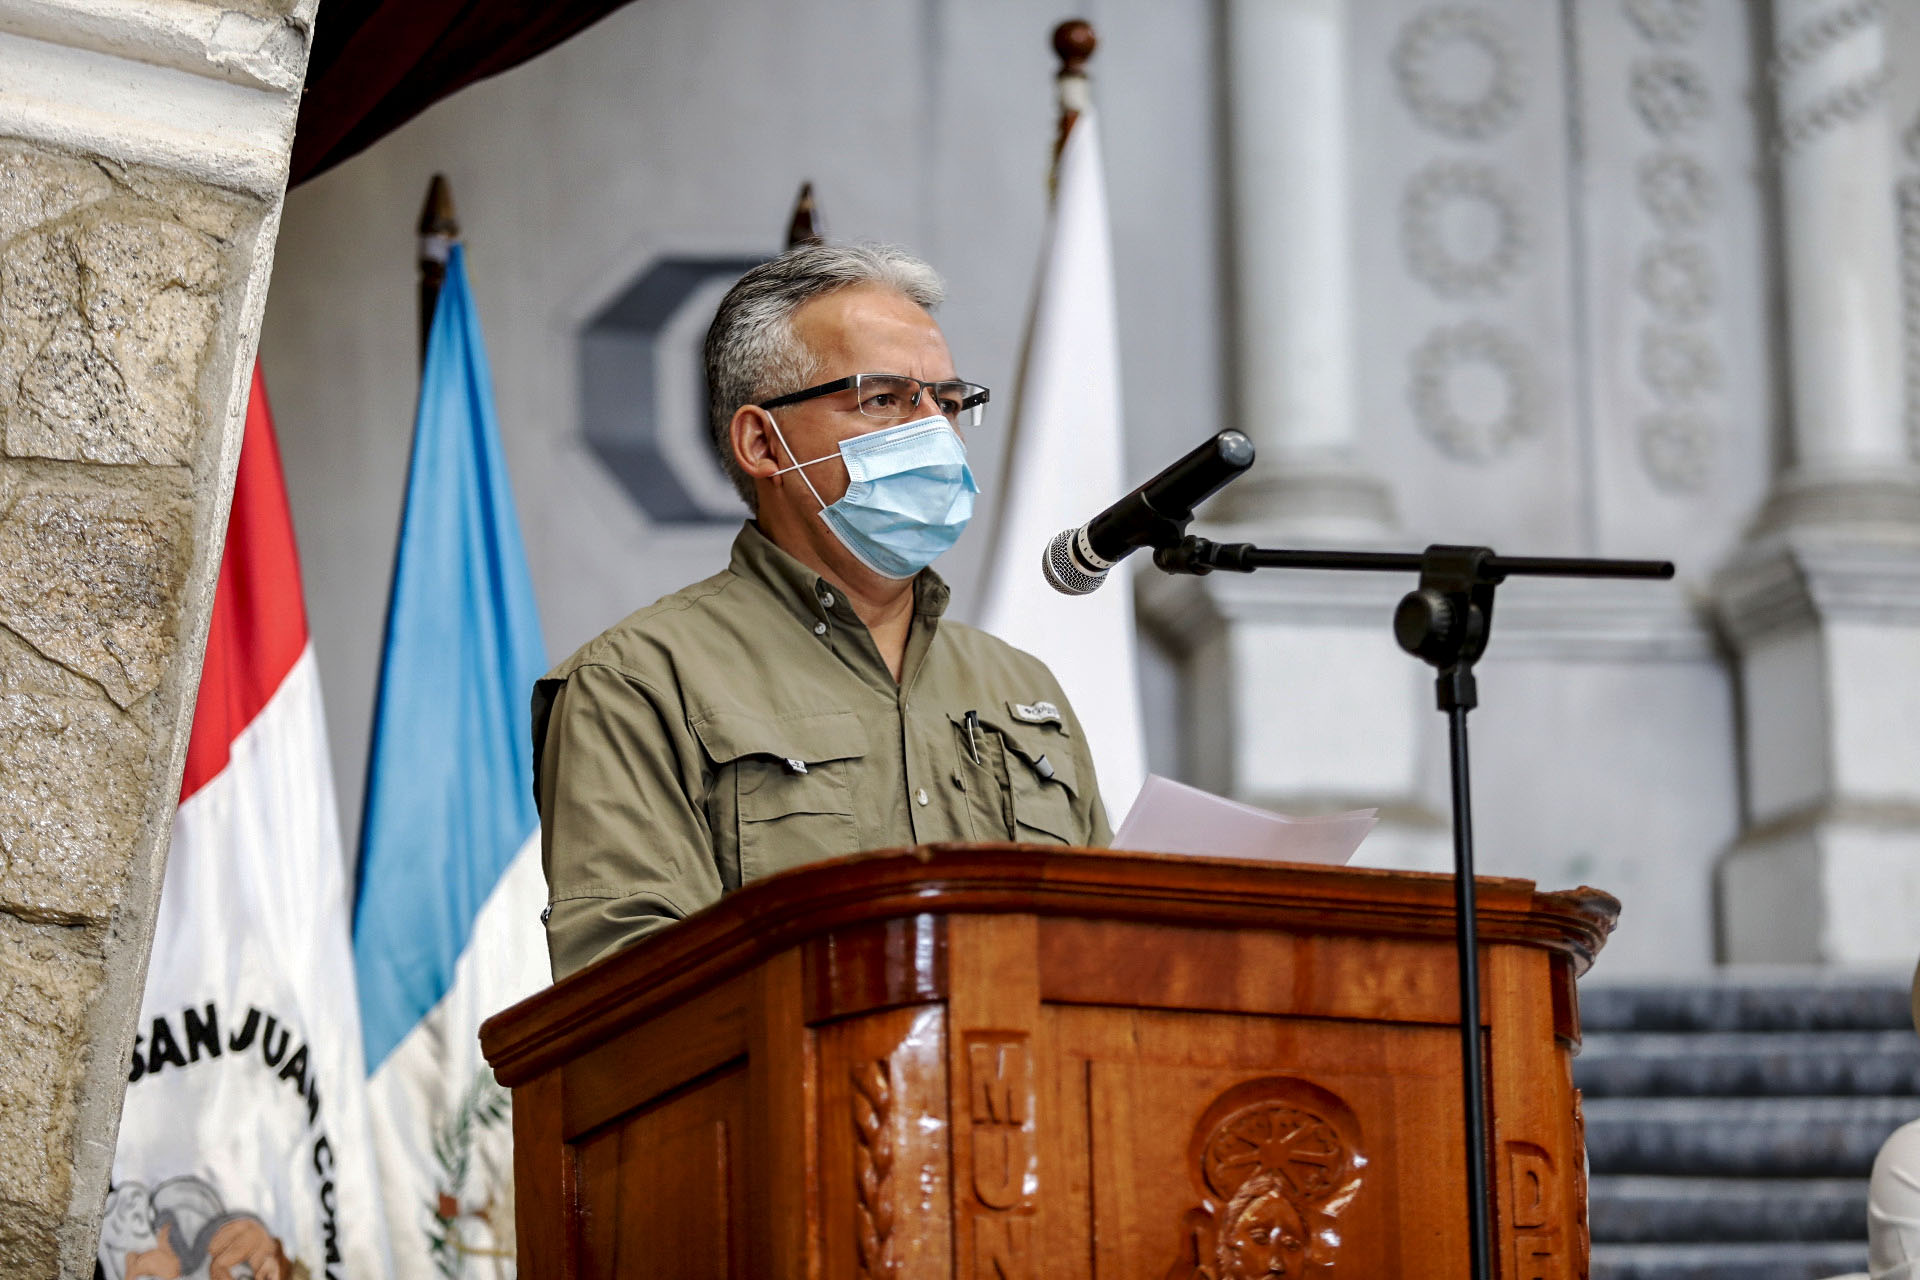 Guillermo Estrada/Presidencia